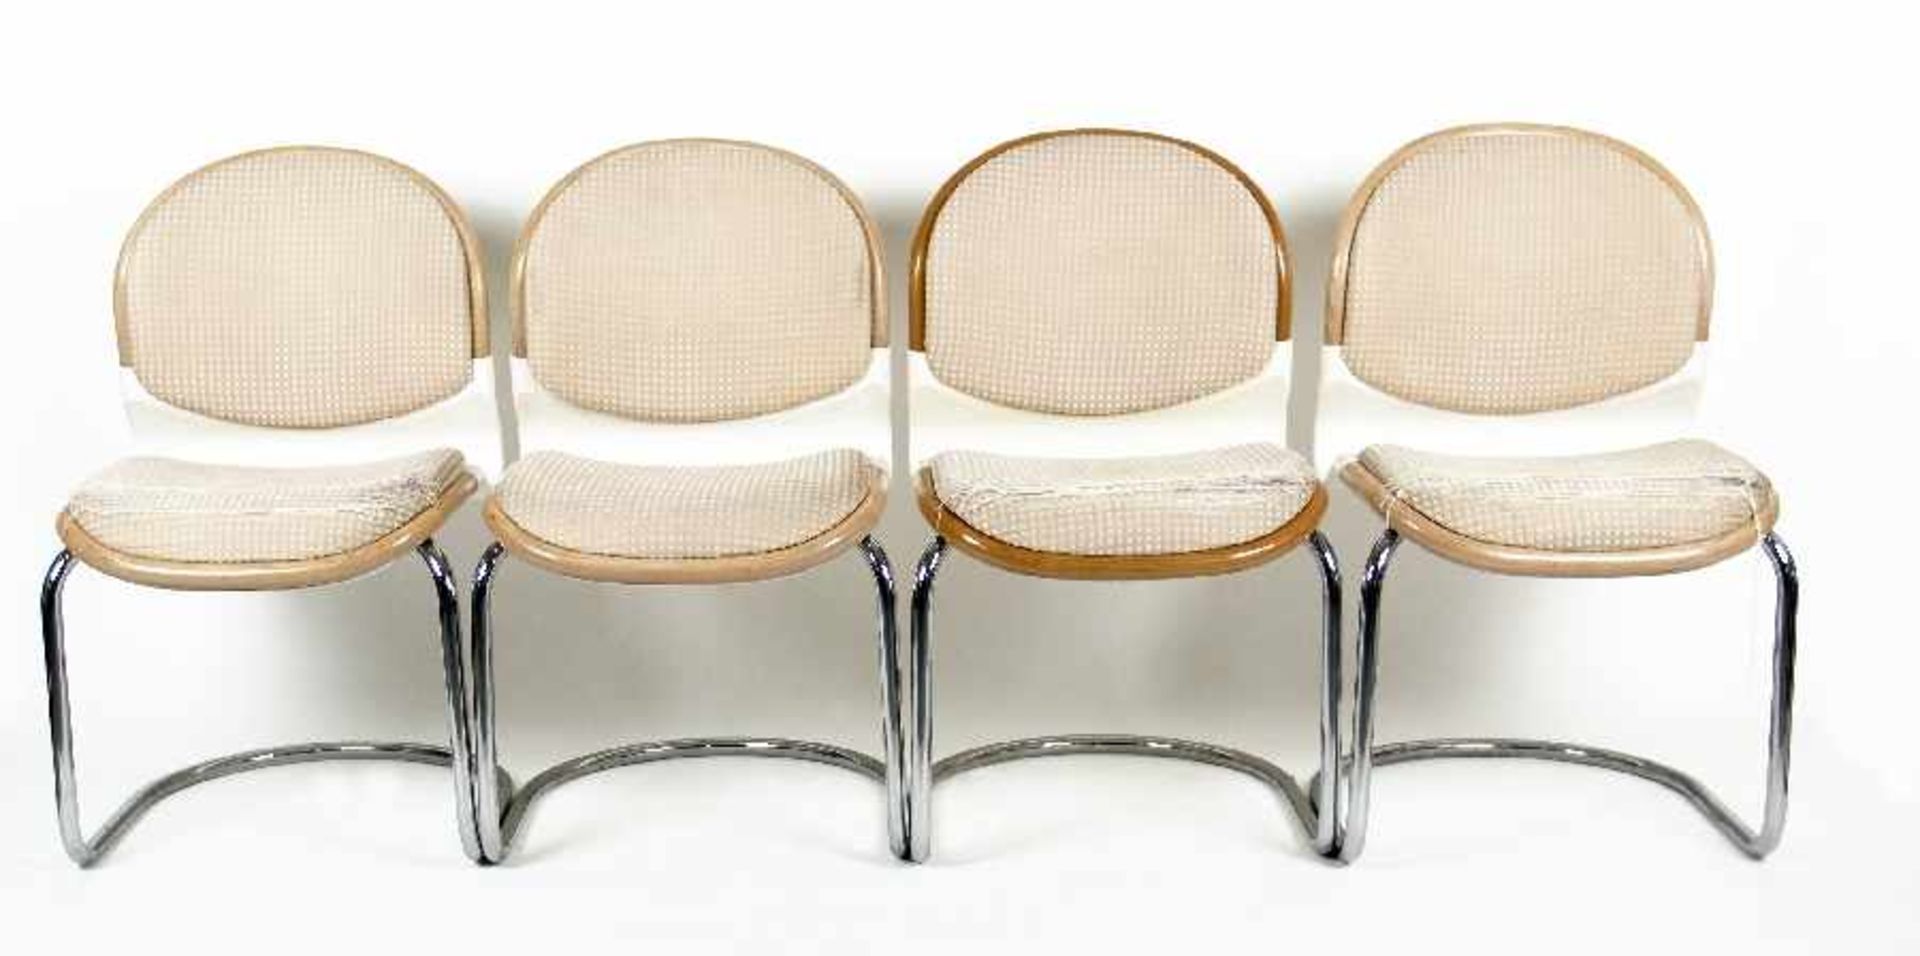 Gerd Lange19314 Thonet cantilever chairsLacquered wood, chromed tubular steel, plastic, fabric